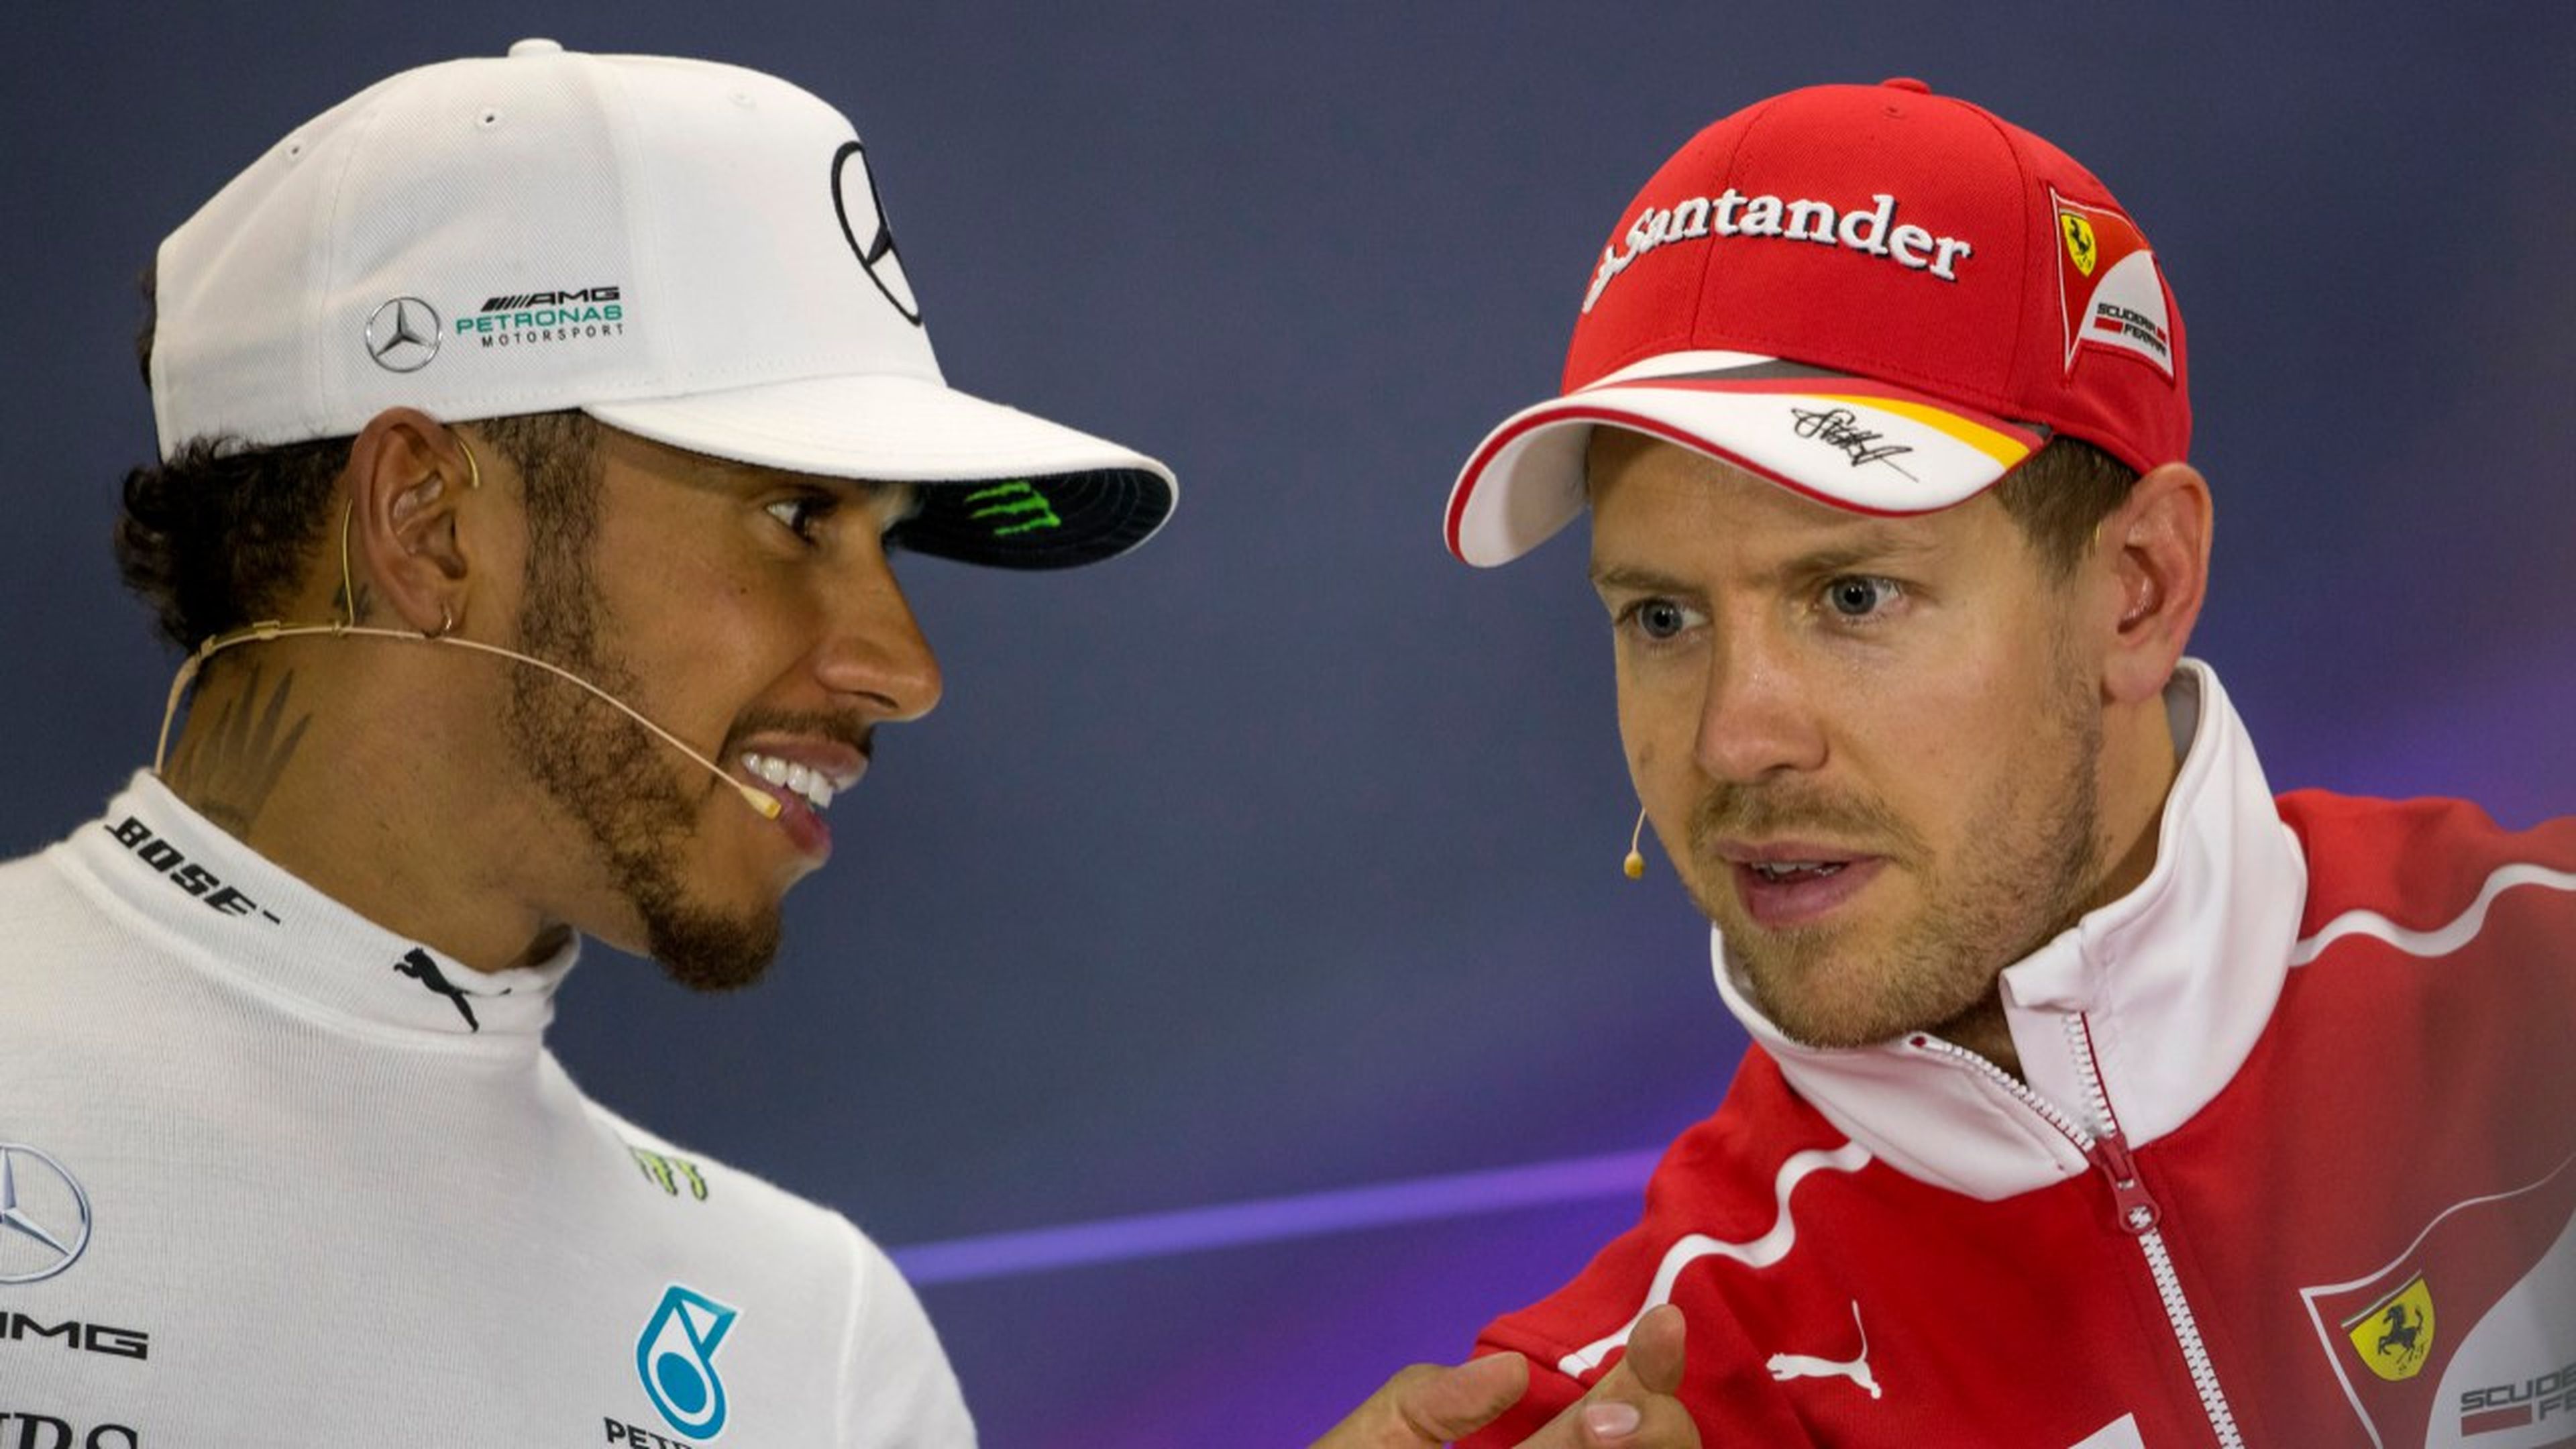 Vettel y Hamilton en rueda de prensa